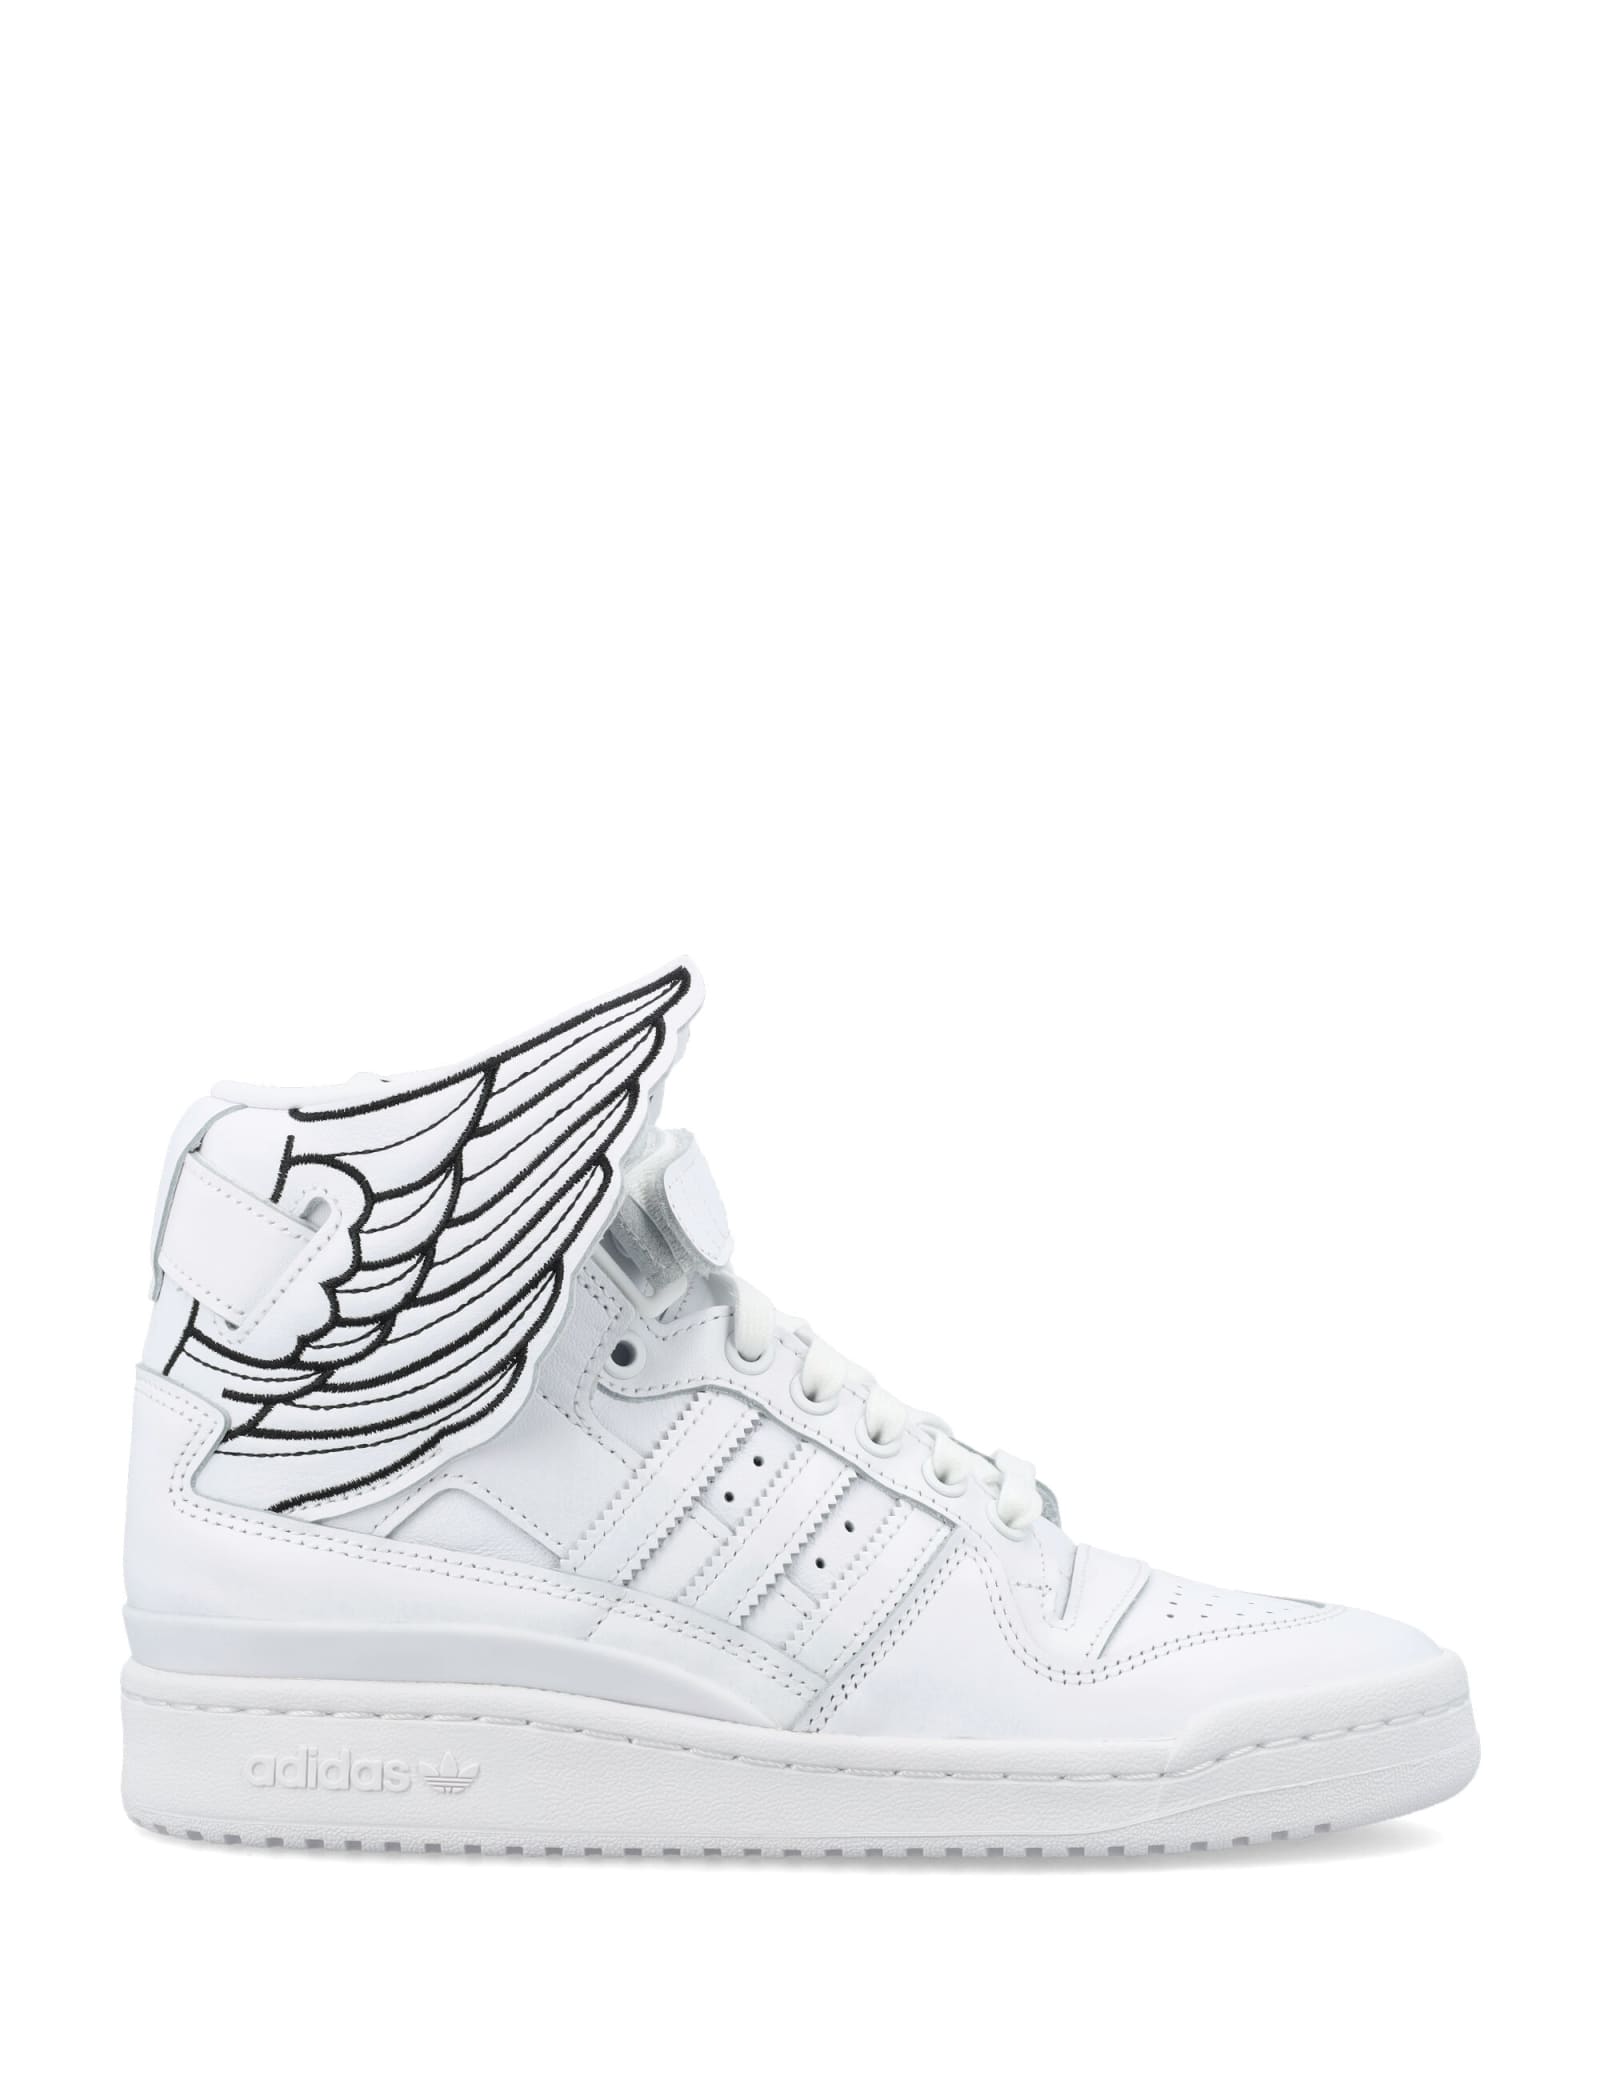 Jeremy Scott Js High Wings 4.0 Sneaker